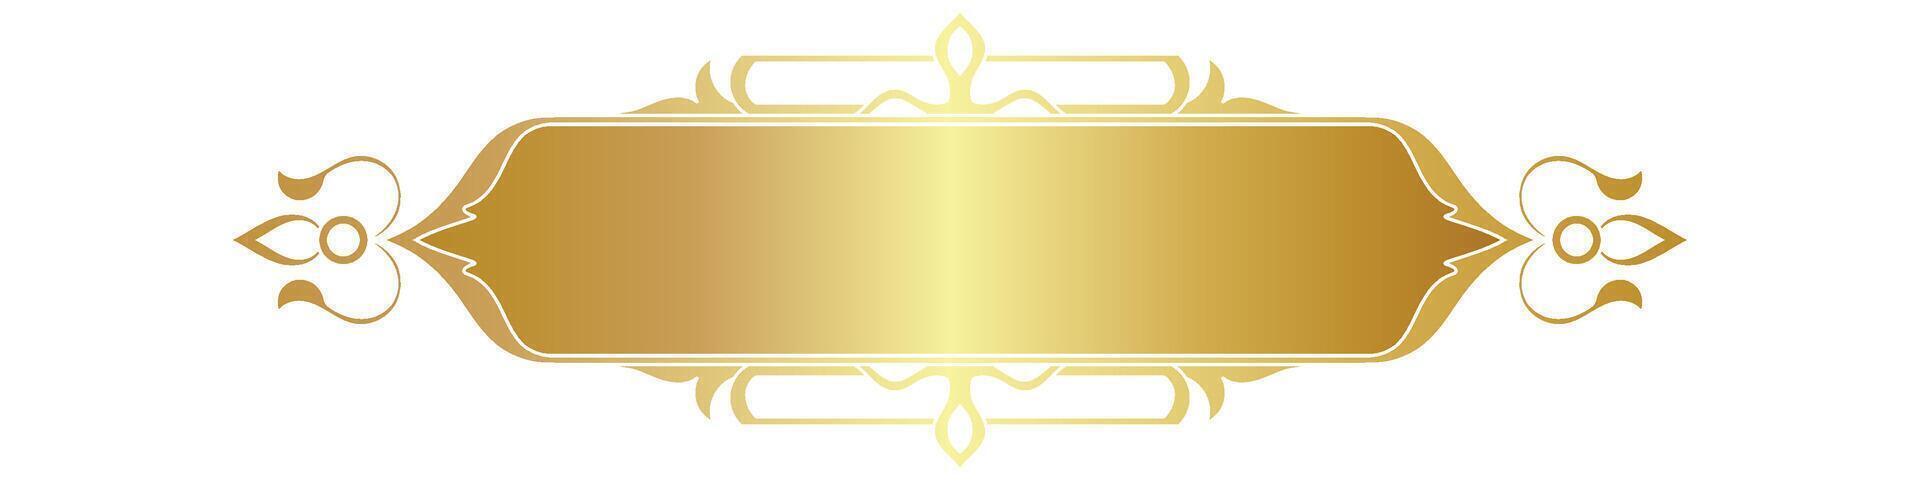 dorado marco. lujoso dorado Arábica islámico texto caja título frontera vector